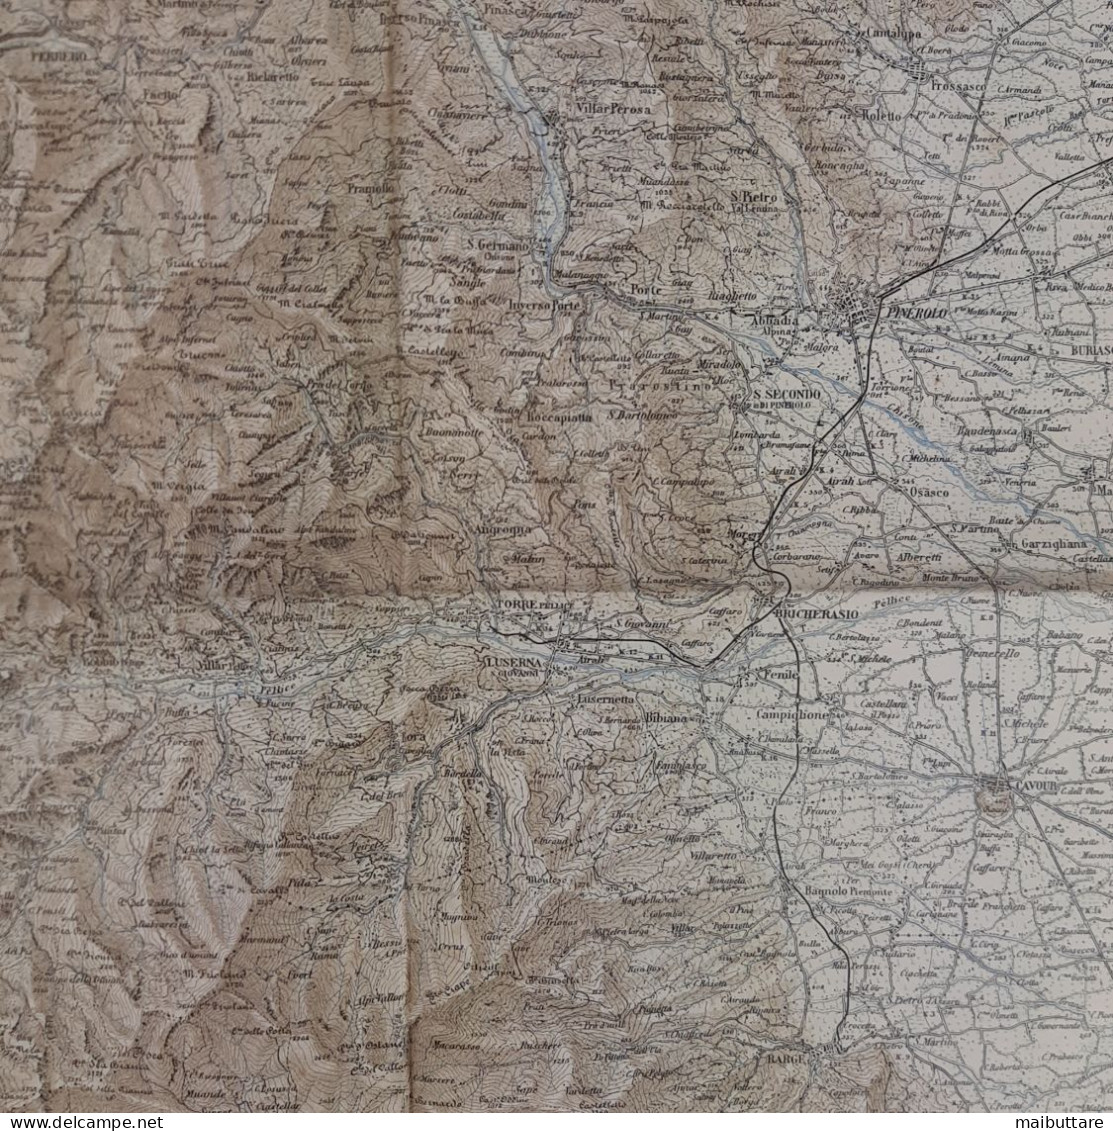 Carta Geografica, Cartina Mappa Militare Pinerolo Torino Piemonte F67 Della Carta D'Italia Scala 1:100.000 - Cartes Géographiques